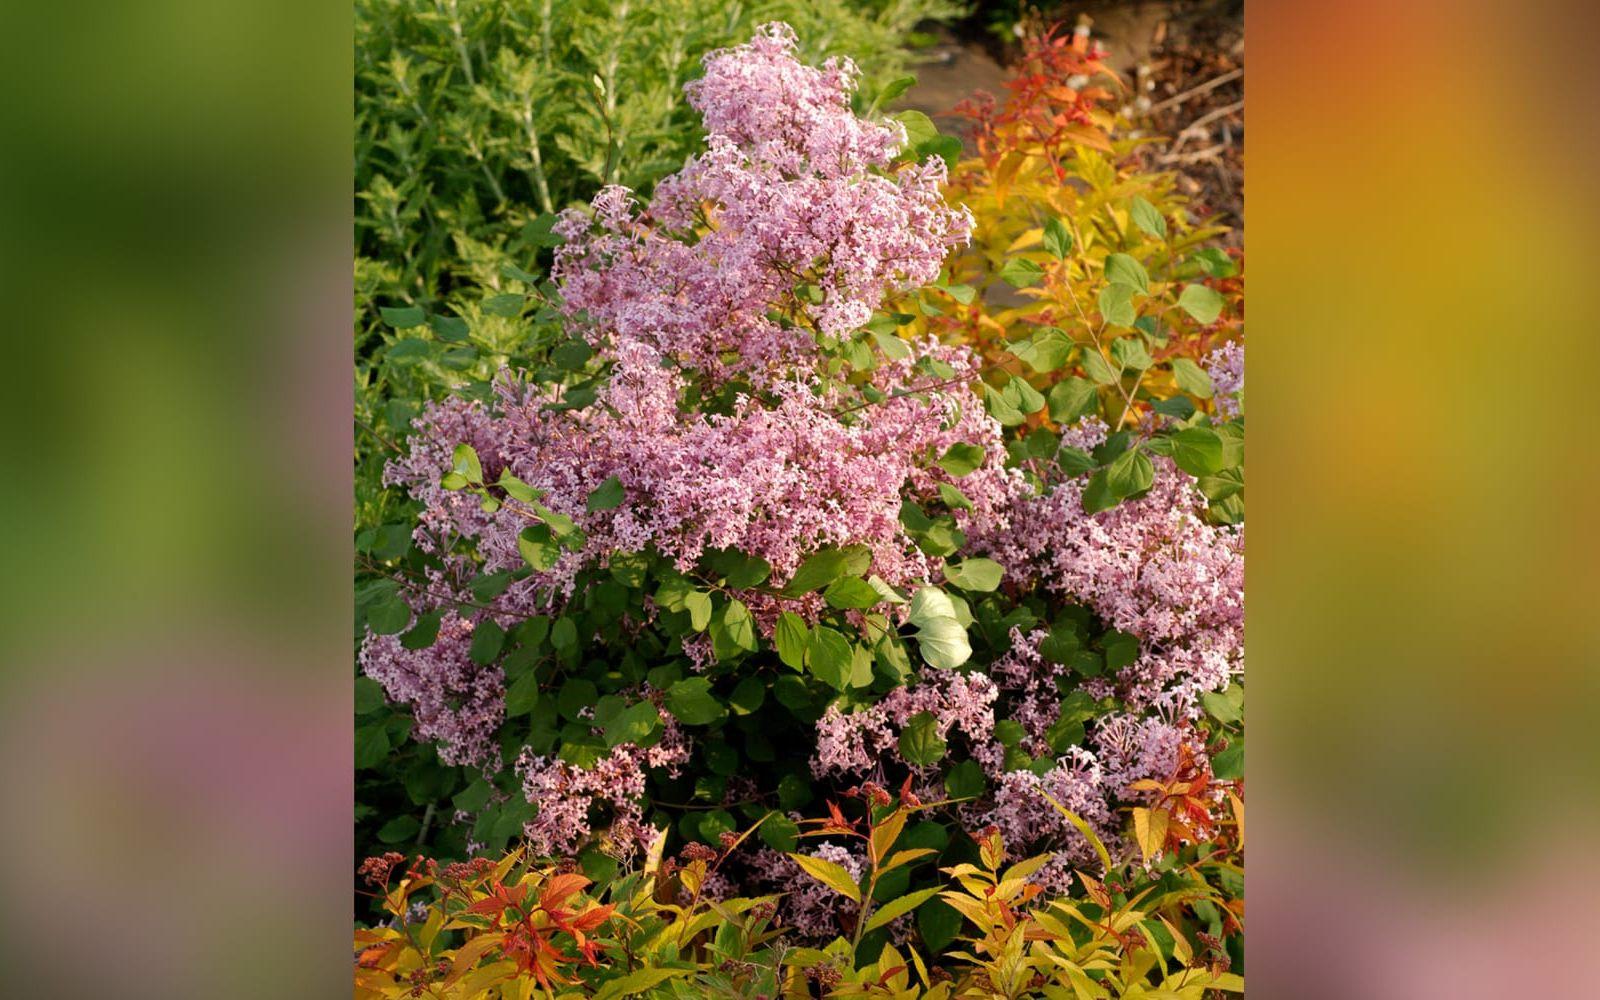 4. Red pixie. Runda, glänsande blad och många, doftande purpurröda blommor med lång blomningstid. Runt, kompakt och buskigt växtsätt, väldigt liten, passar i en mindre trädgård. Blir 1-1,5 meter. Zon 1-4. Foto: Pépinières Minie/Blomsterfrämjandet